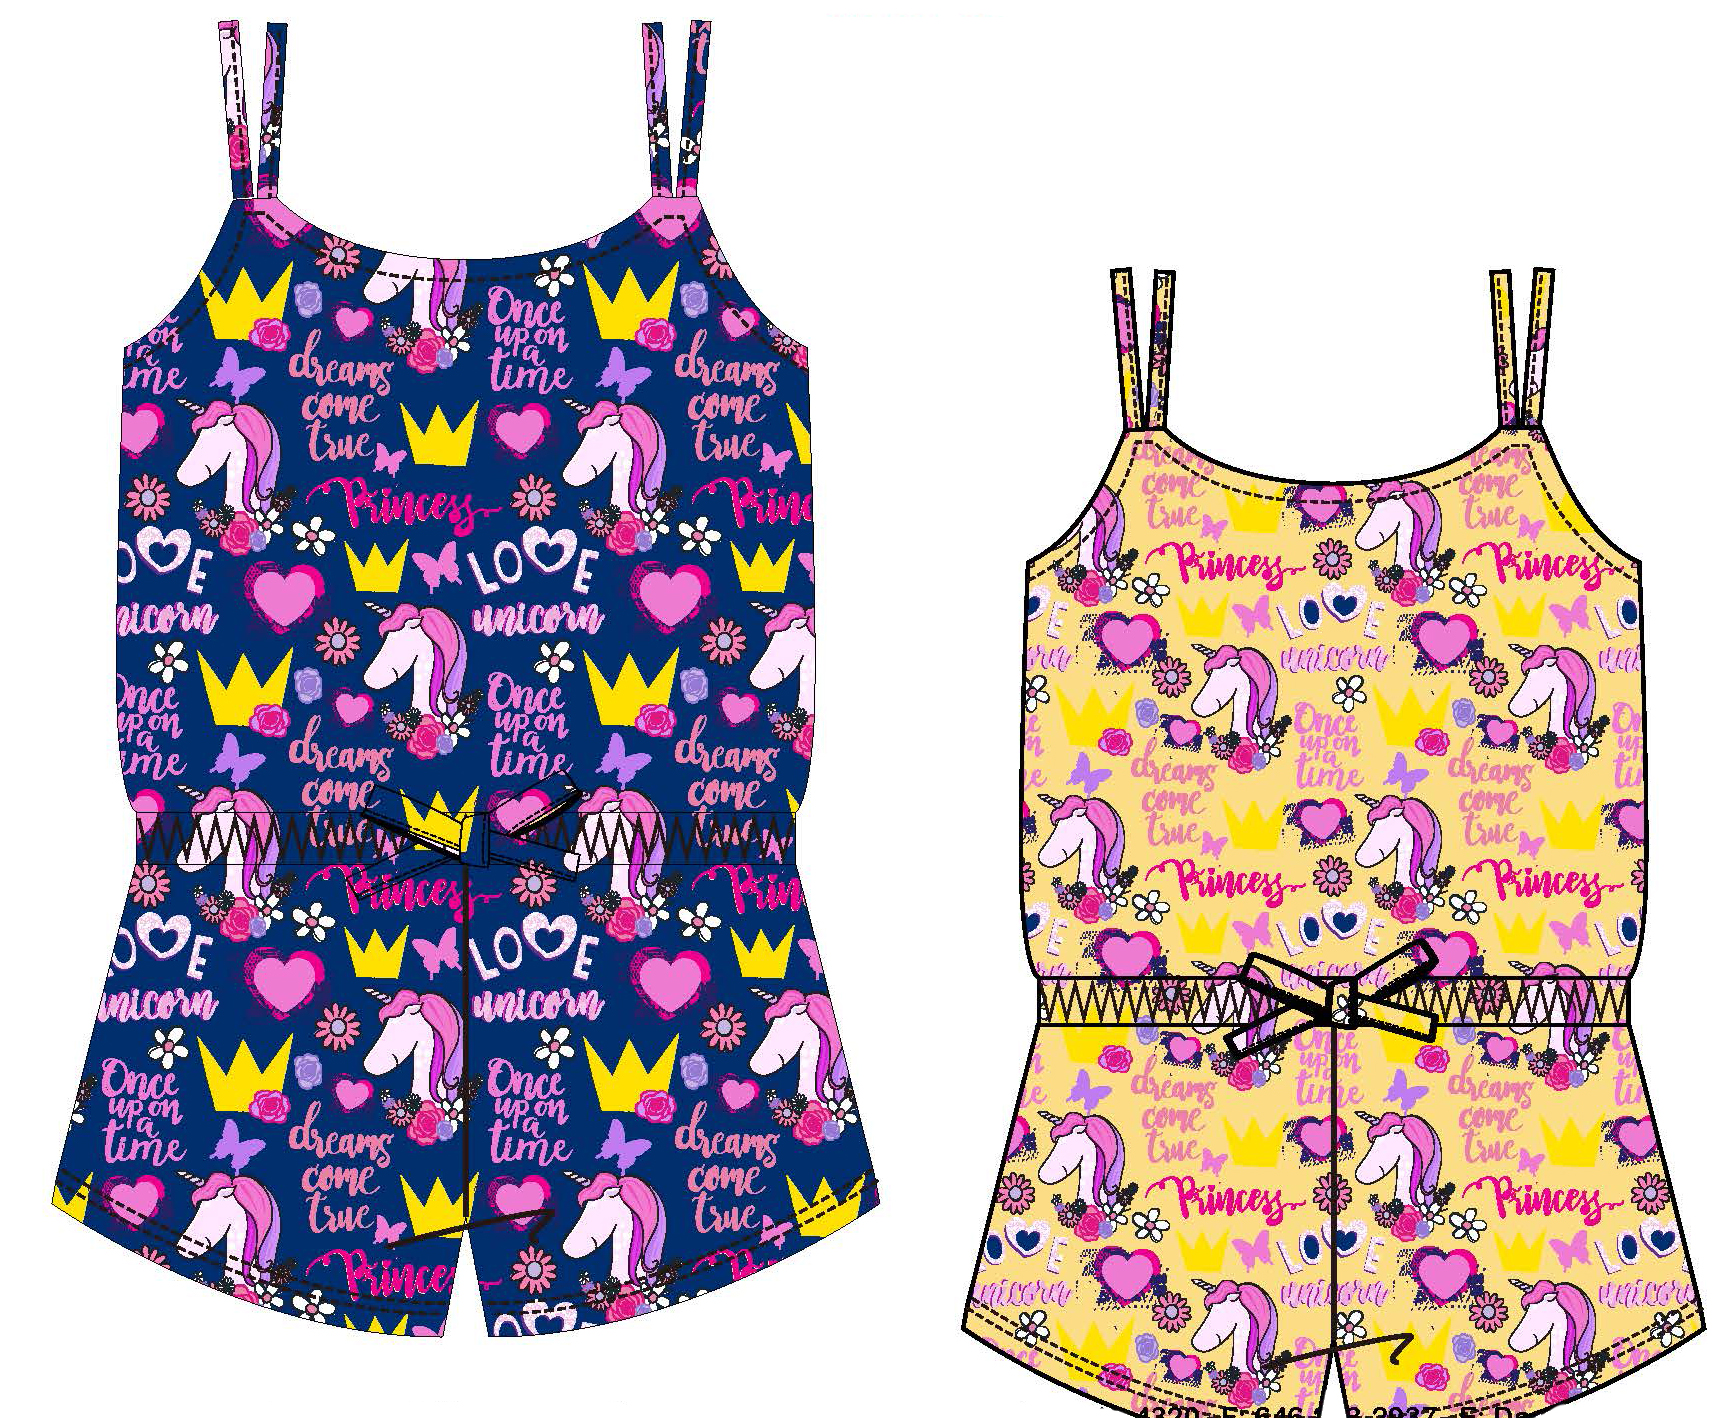 Baby Girl's Printed Knit Romper DRESS w/ Royal Princess & Unicorn Print - Size 0/3M-9M